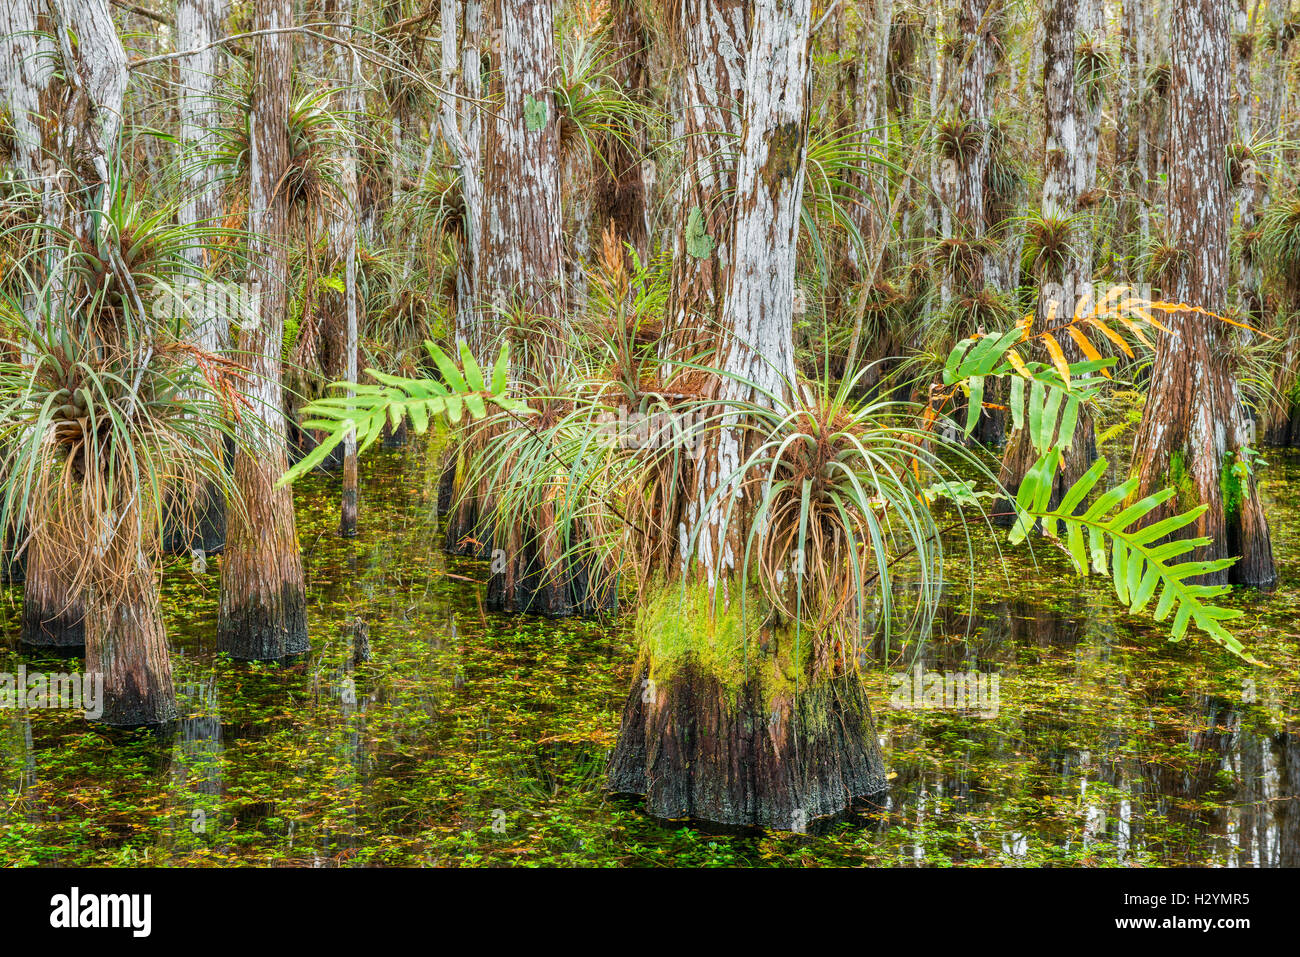 Cipresso calvo alberi coperti di bromeliacee e felci all'interno di una cupola di cipressi - Everglades National Park Florida USA Foto Stock